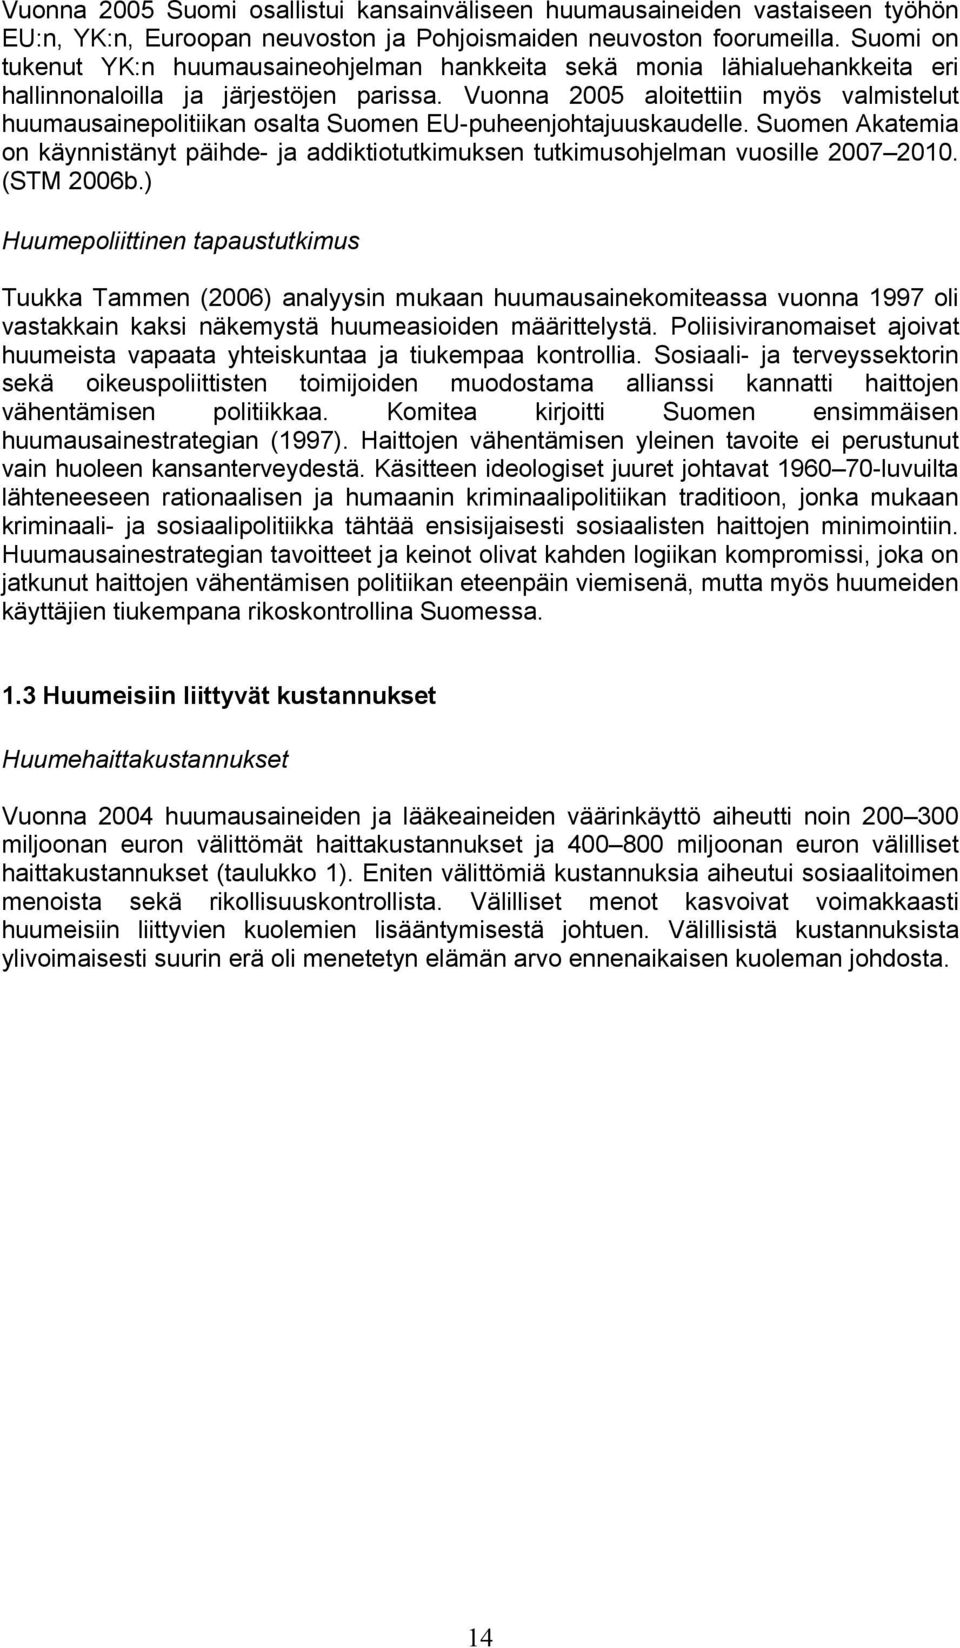 Vuonna 2005 aloitettiin myös valmistelut huumausainepolitiikan osalta Suomen EU-puheenjohtajuuskaudelle.